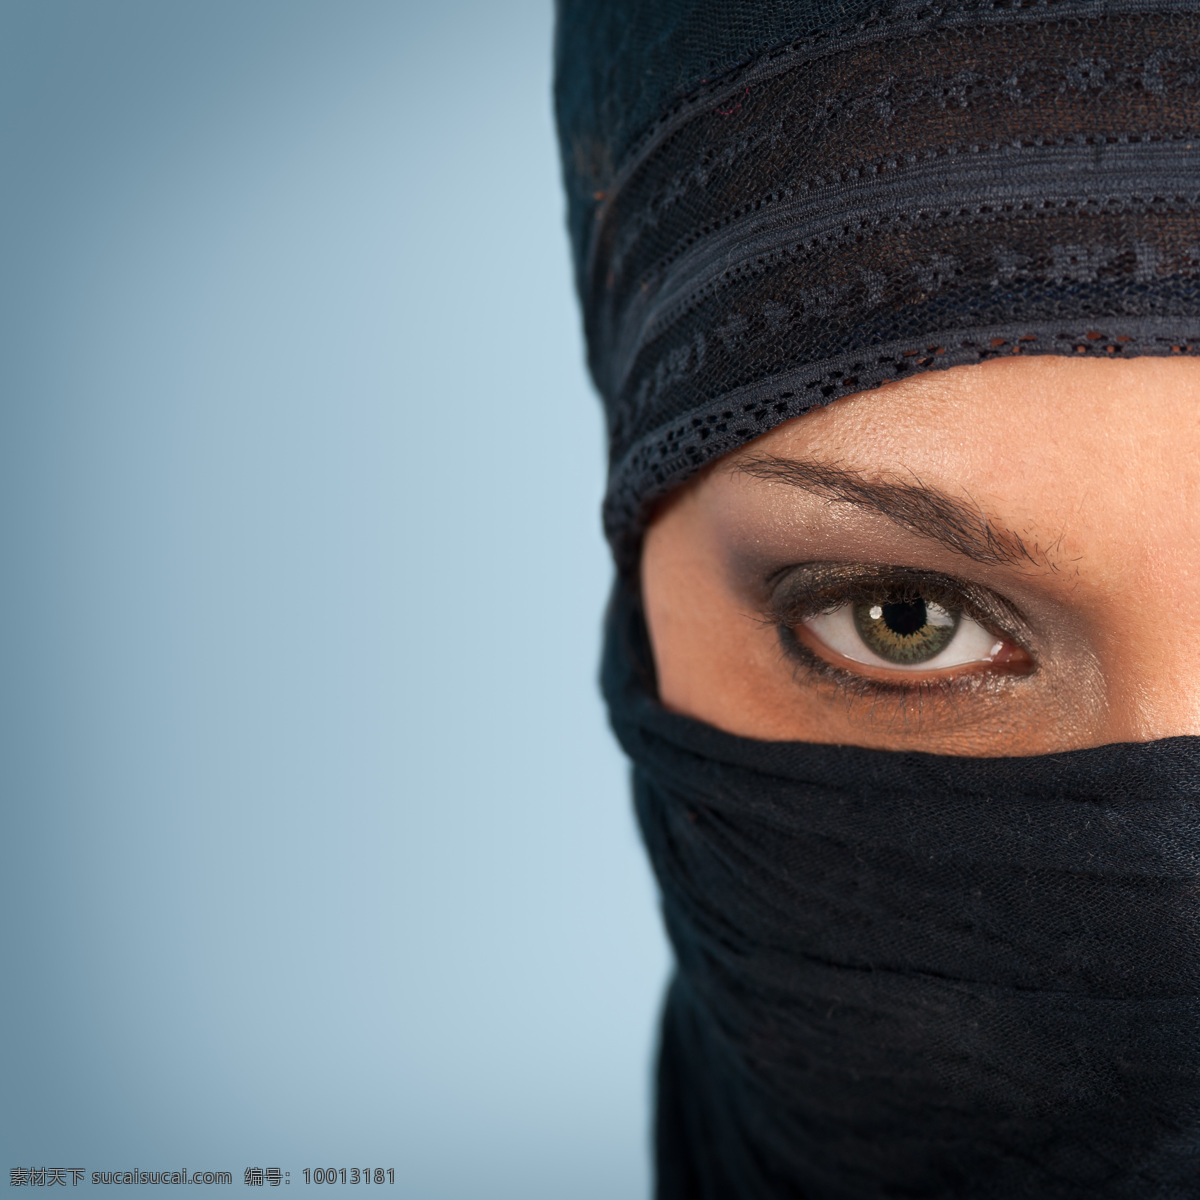 蒙 面的 时尚 女性 阿拉伯女性 伊朗女性 外国女性 蒙面 头巾 装扮 女人 美女图片 人物图片